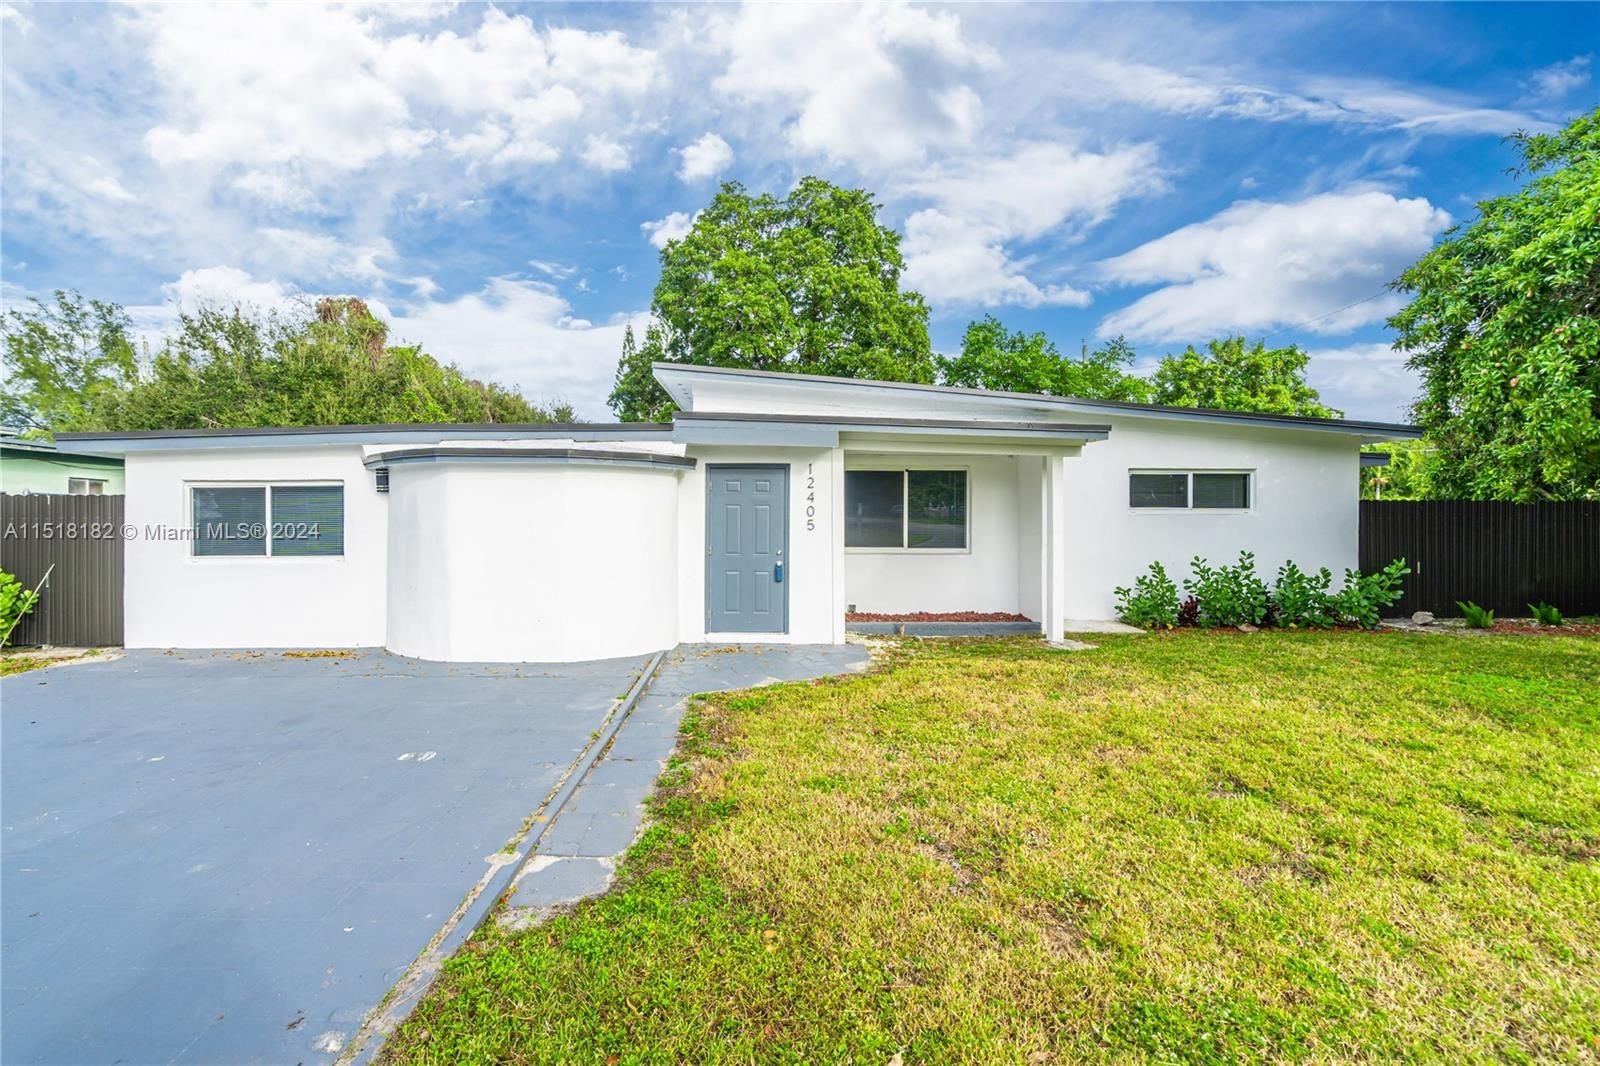 Real estate property located at 12405 20th Ave, Miami-Dade County, NICHOLS GOLF ESTATES, Miami, FL